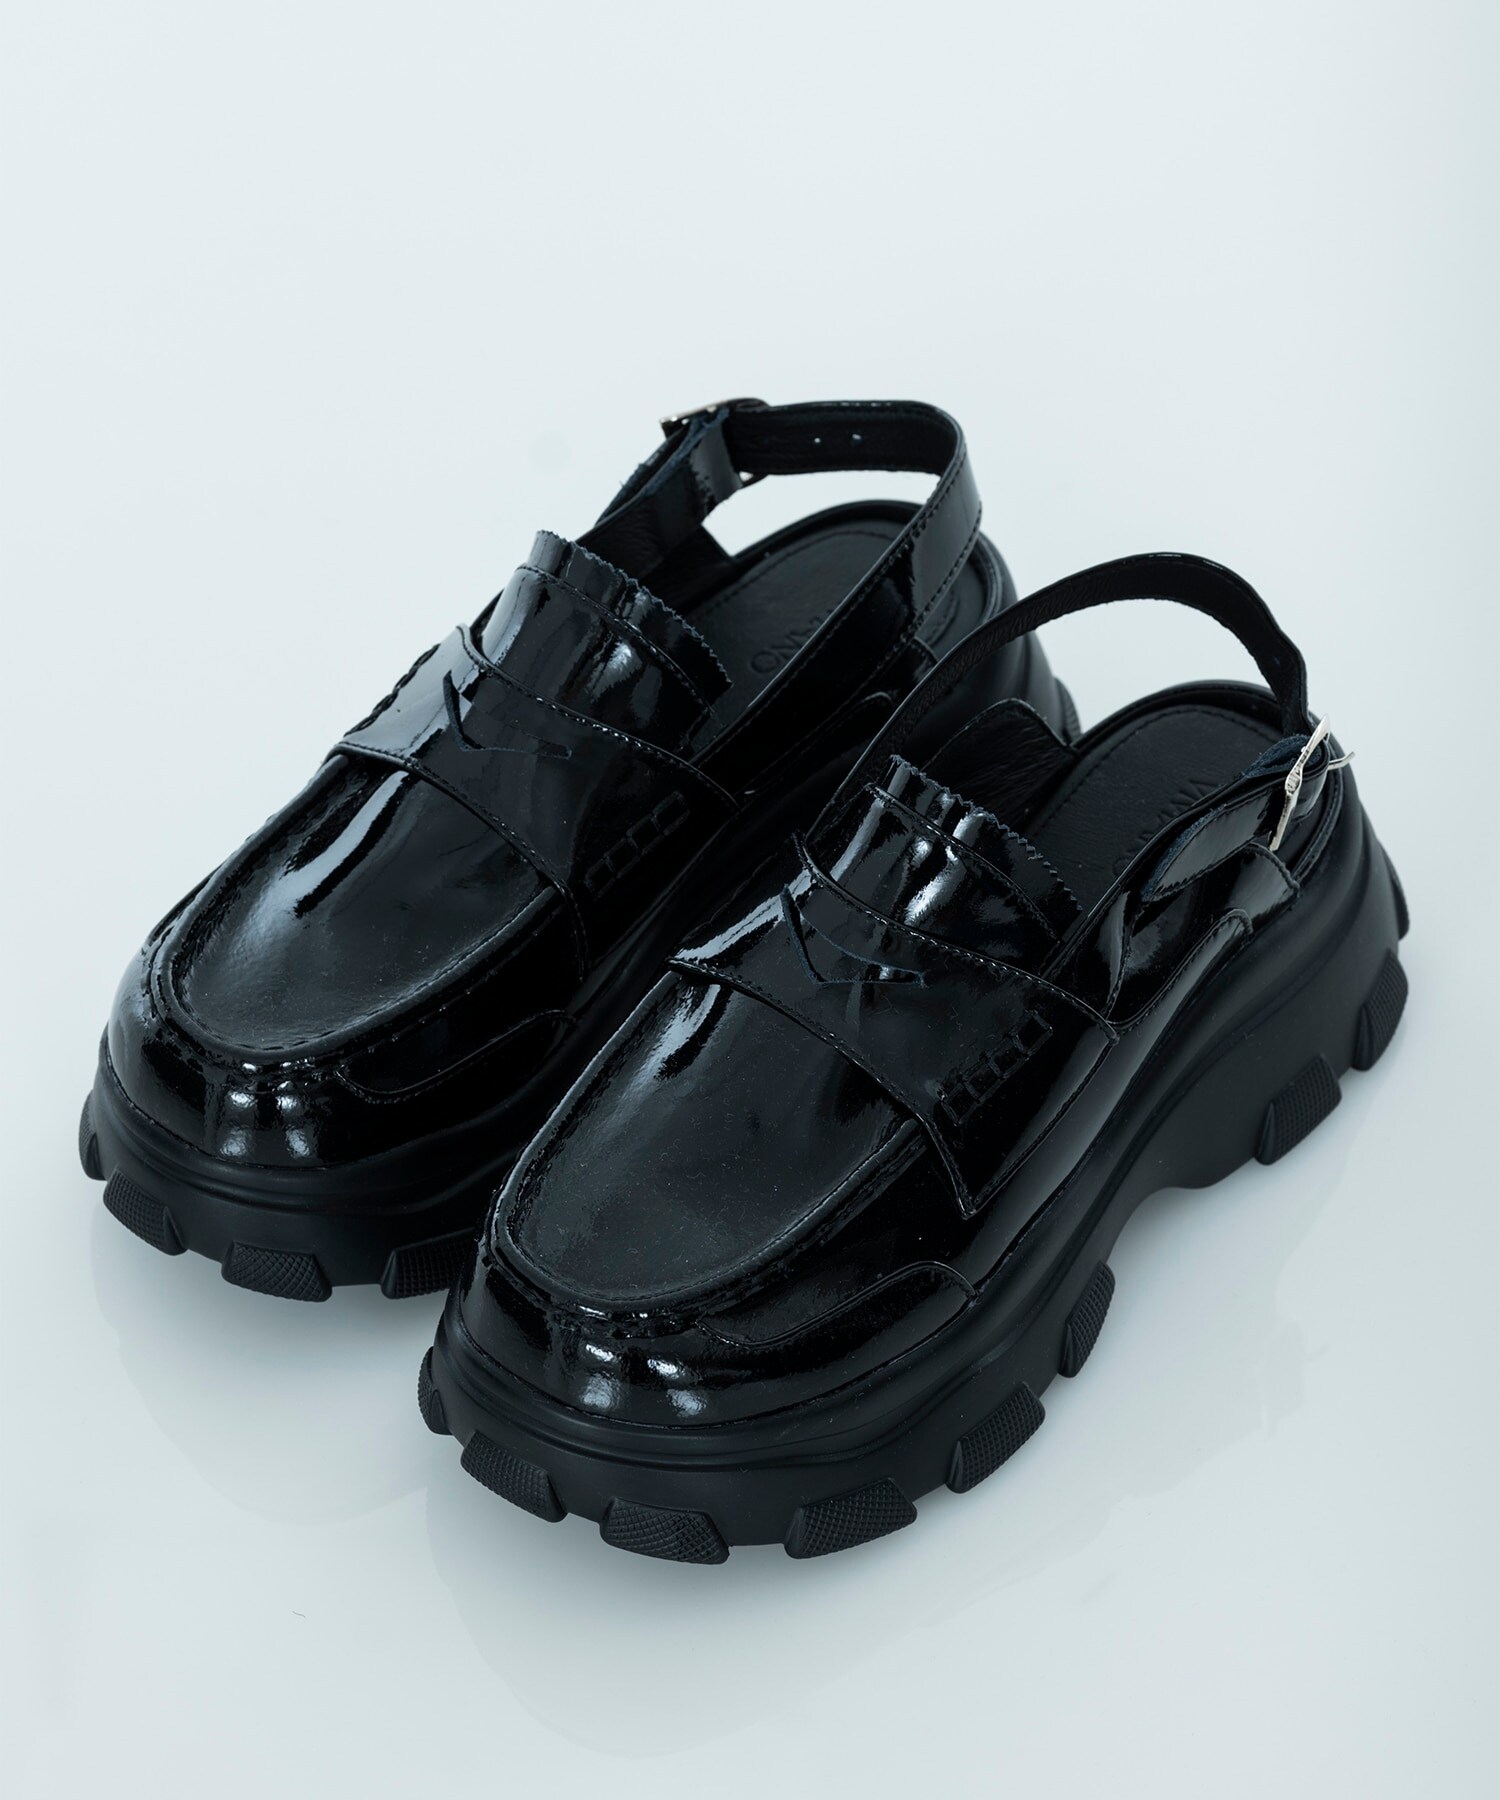 Loafer sandals